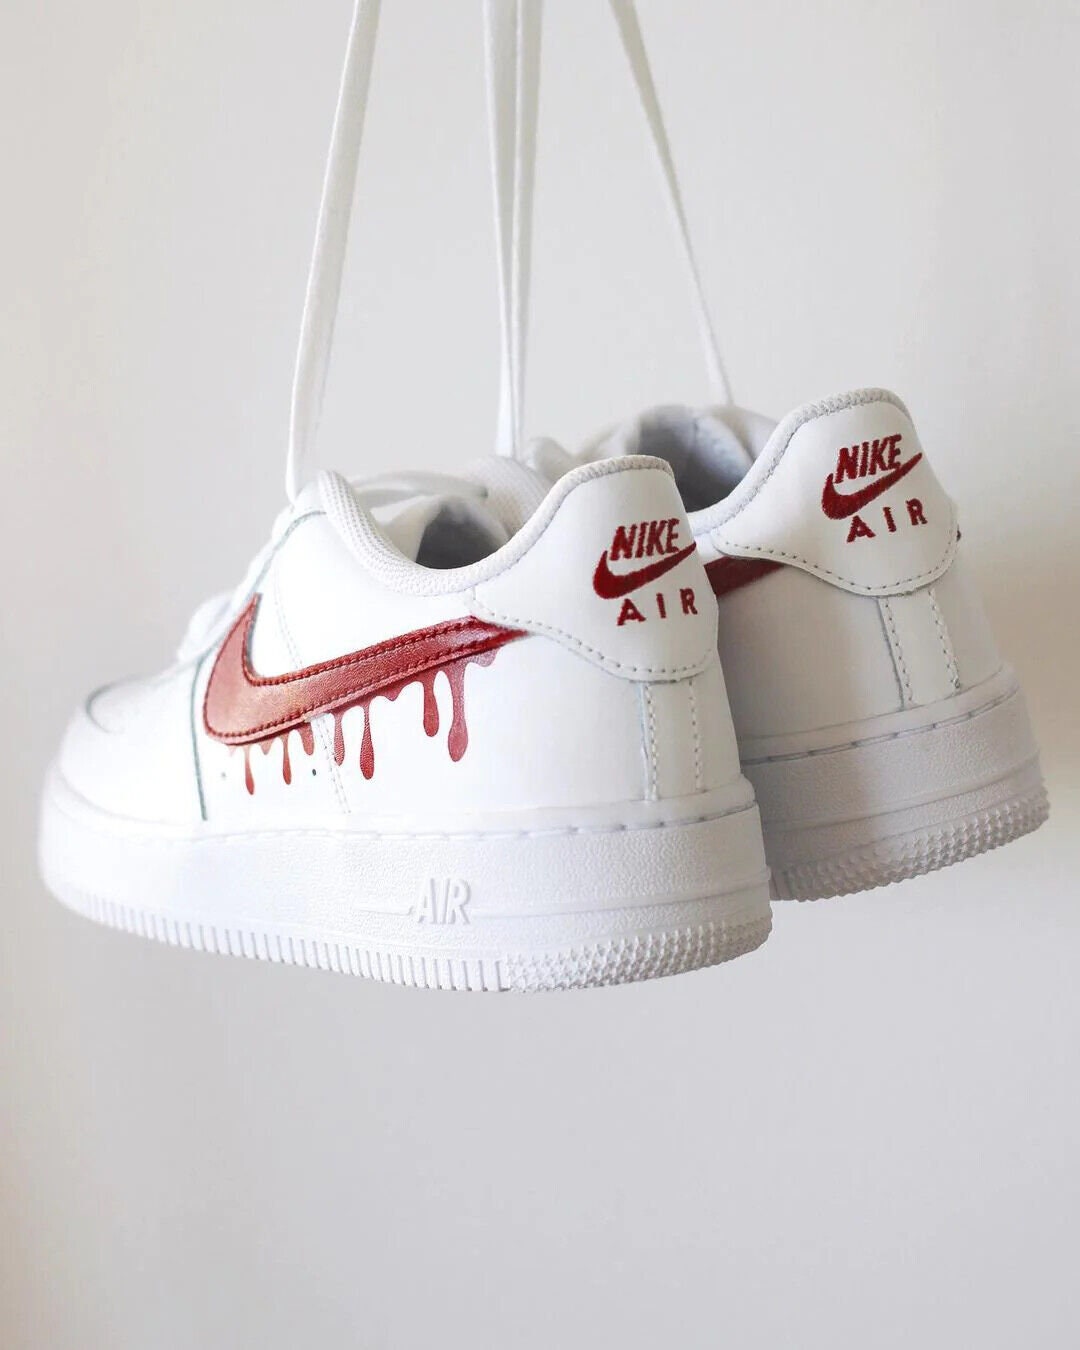 Nike Air Force 1 Custom Sneakers Blood Drip Splatter Red Black